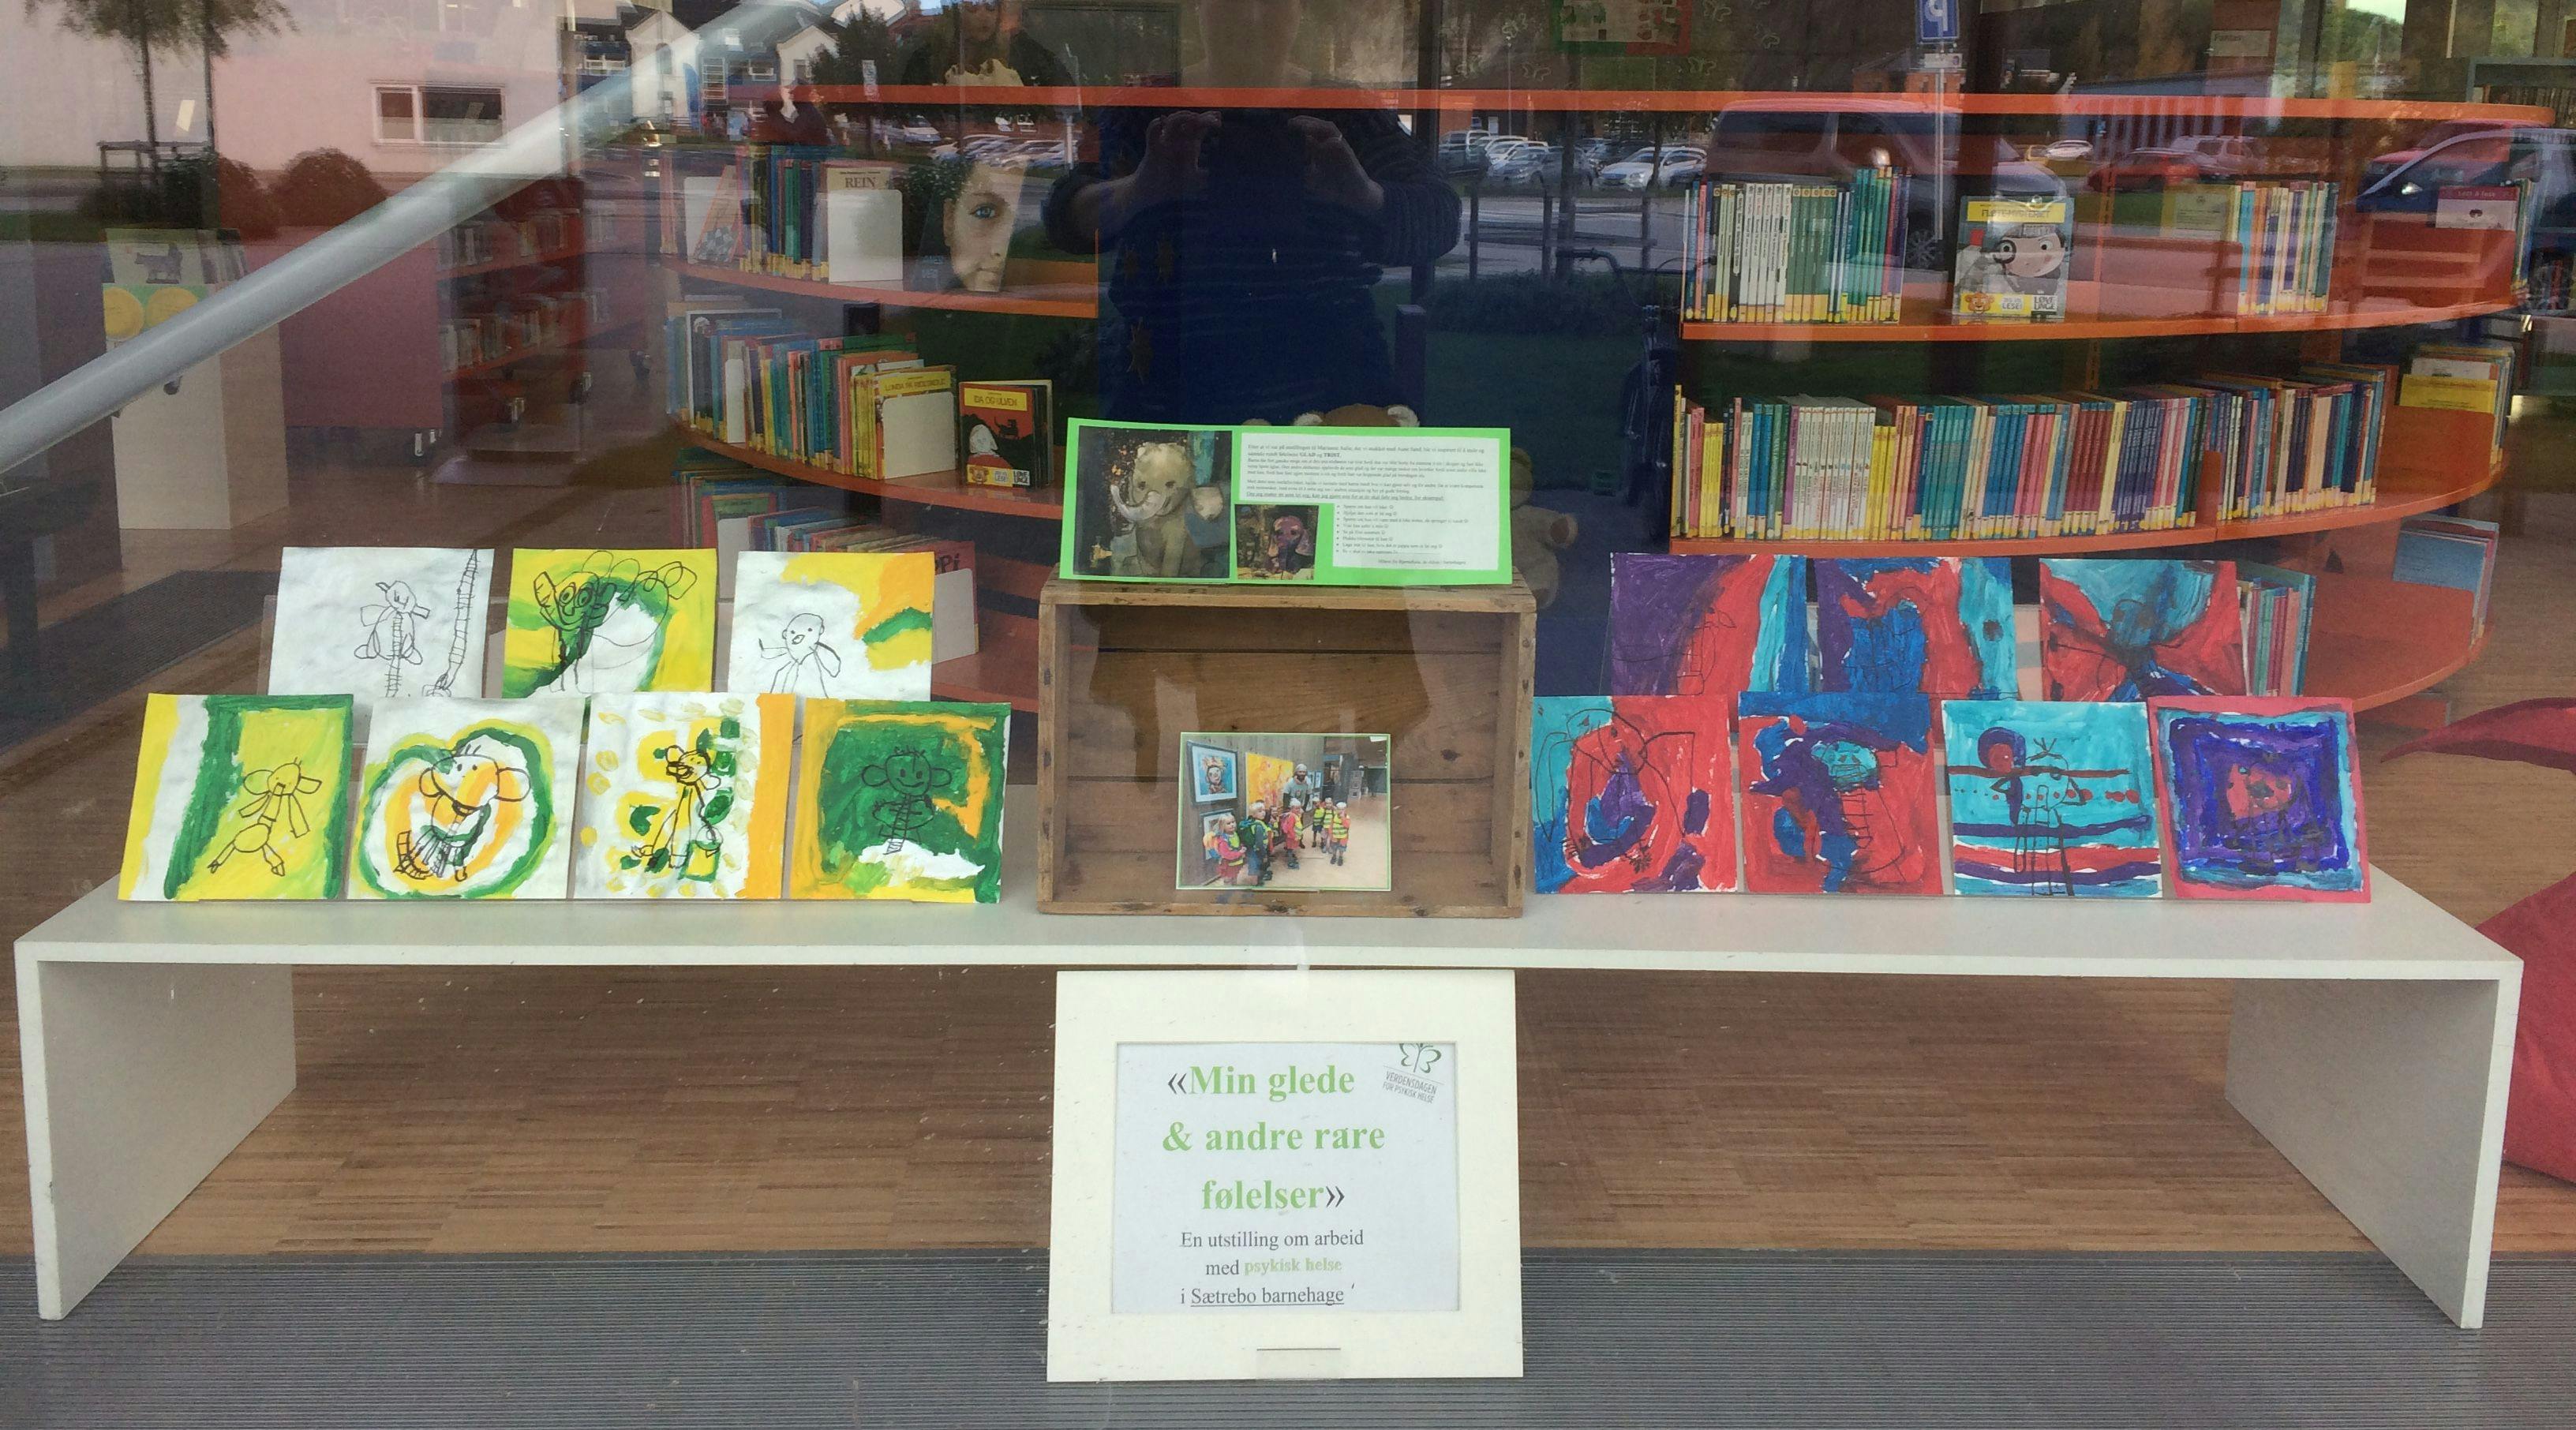 Bilde av et utstillingsvindu i en butikk eller bibliotek med tegninger fra barna